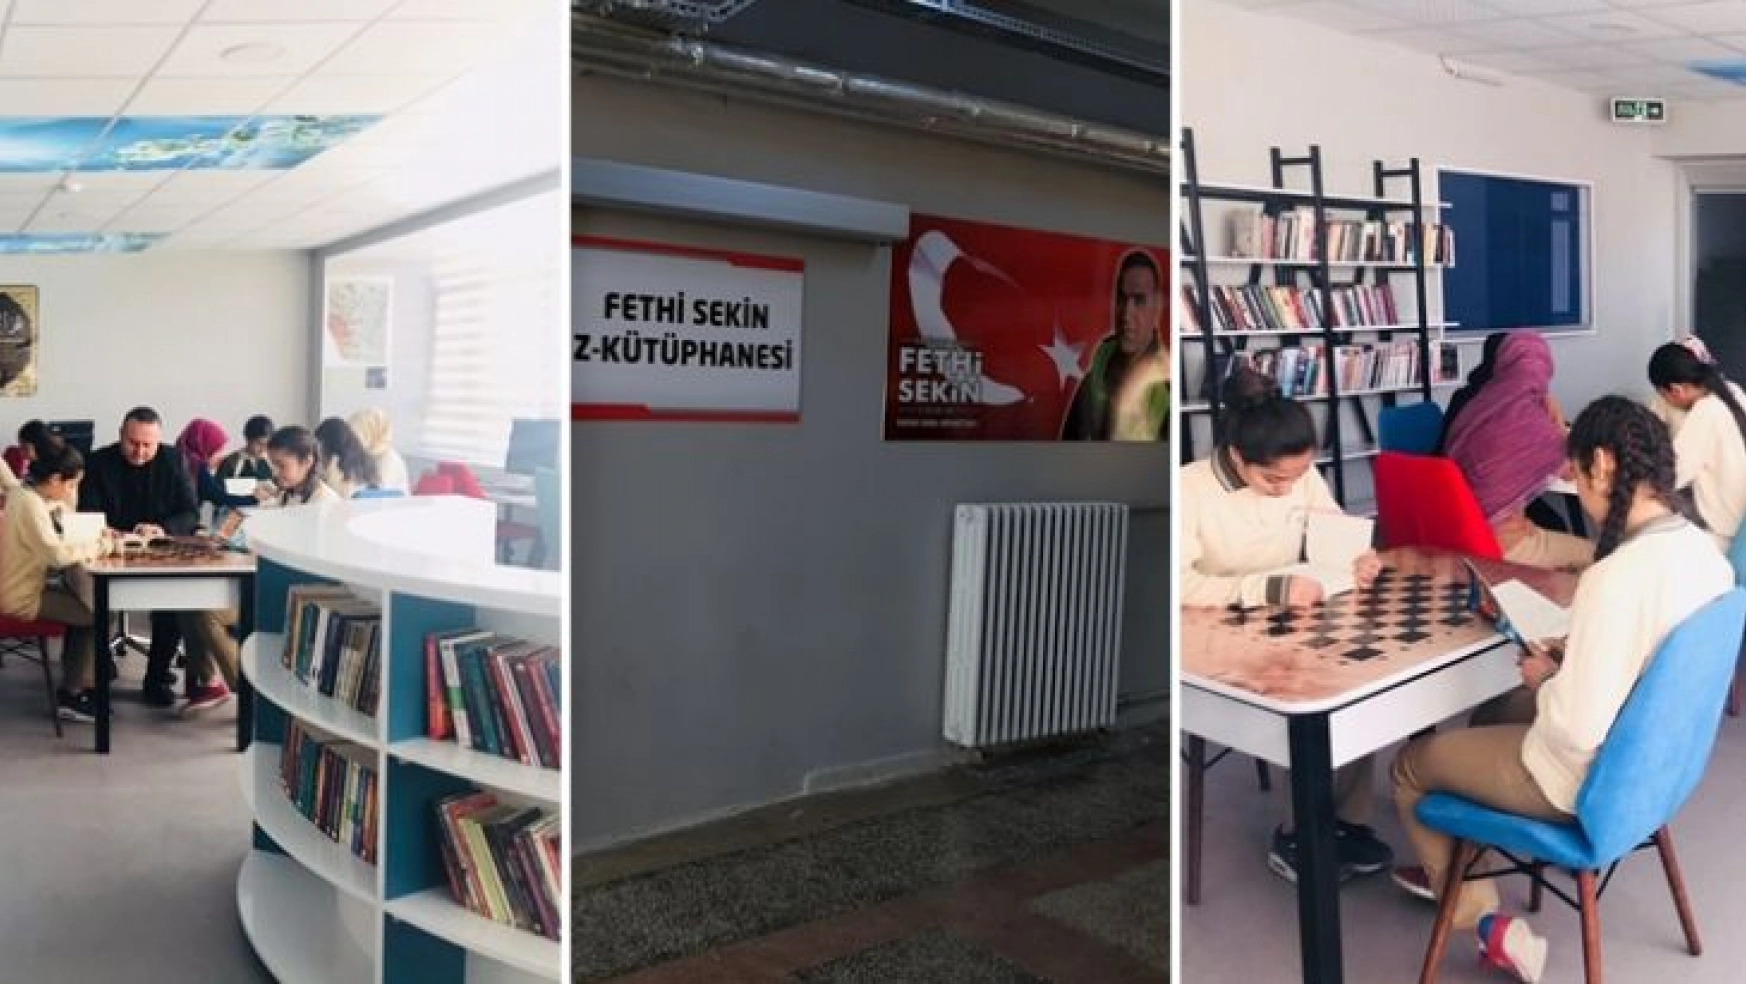 Şehit Fethi Sekin Kütüphanesi açıldı